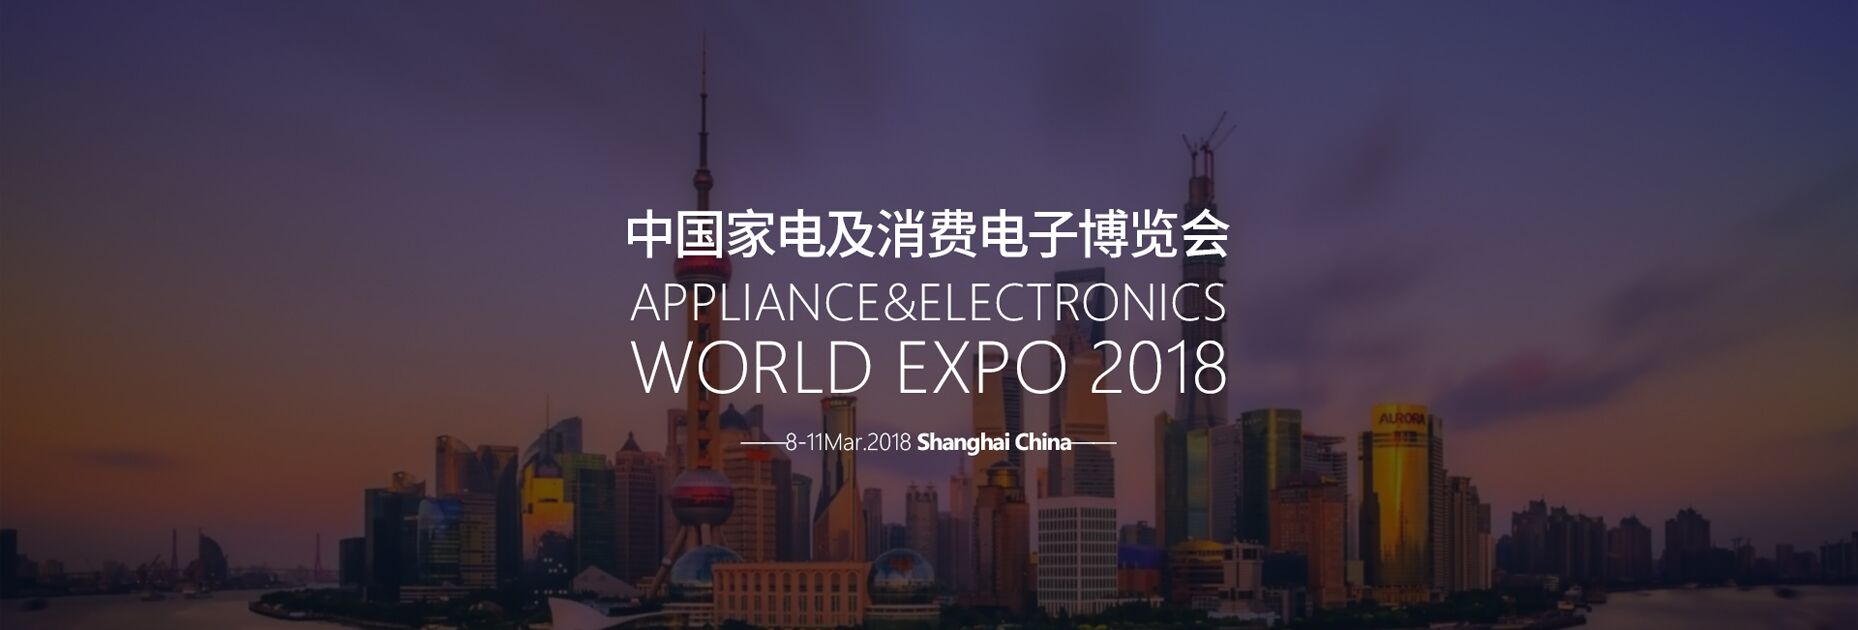 AWE2018中国家电及消费电子博览会 全球三大家电展之一